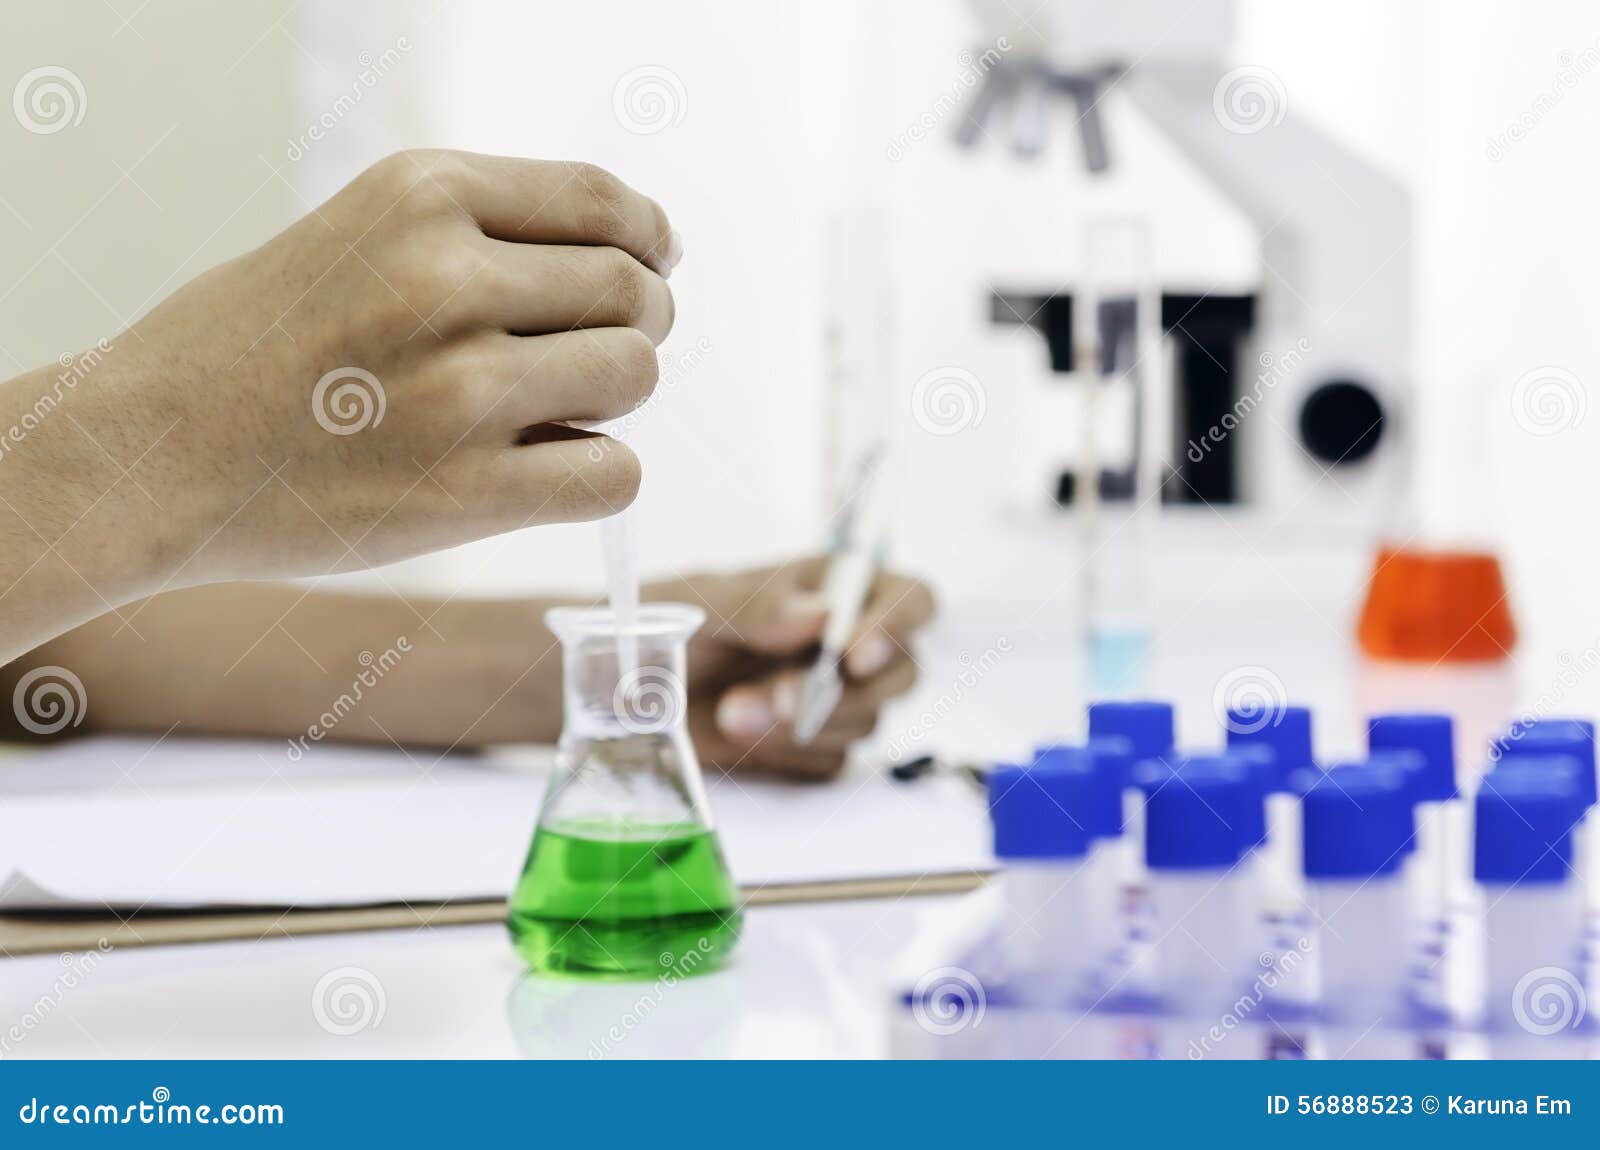 Εργαστήριο ερευνητών. Χέρι Researcherâ€™s που ρίχνει ένα πράσινο υγρό σε μια κούπα